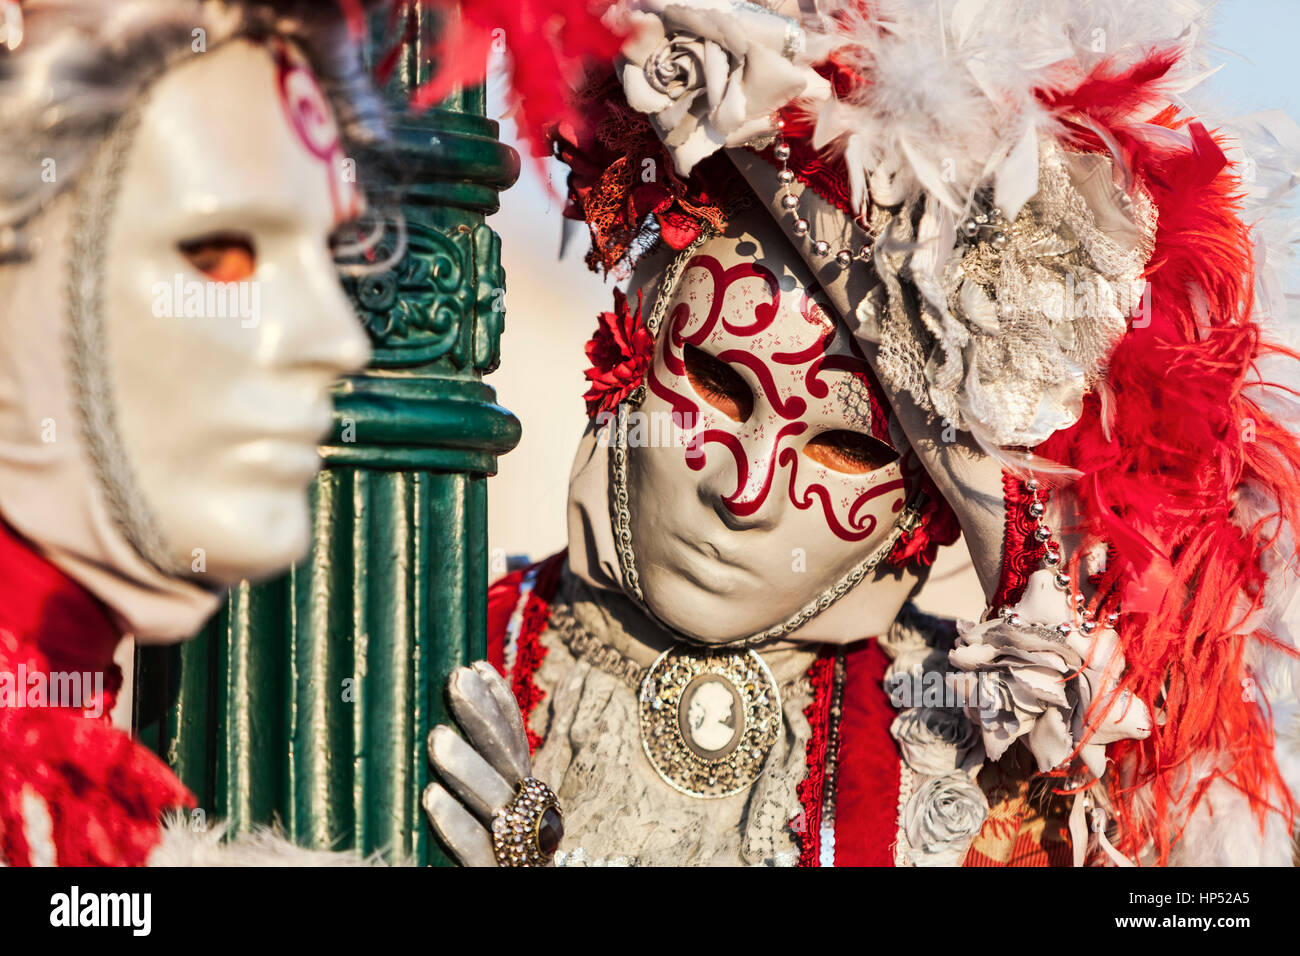 Venedig, Italien - 18. Februar 2012: ökologische Porträt zweier Personen, die schönen bunten Kostümen und Masken tragen, während der Karneval von Venedig. Stockfoto